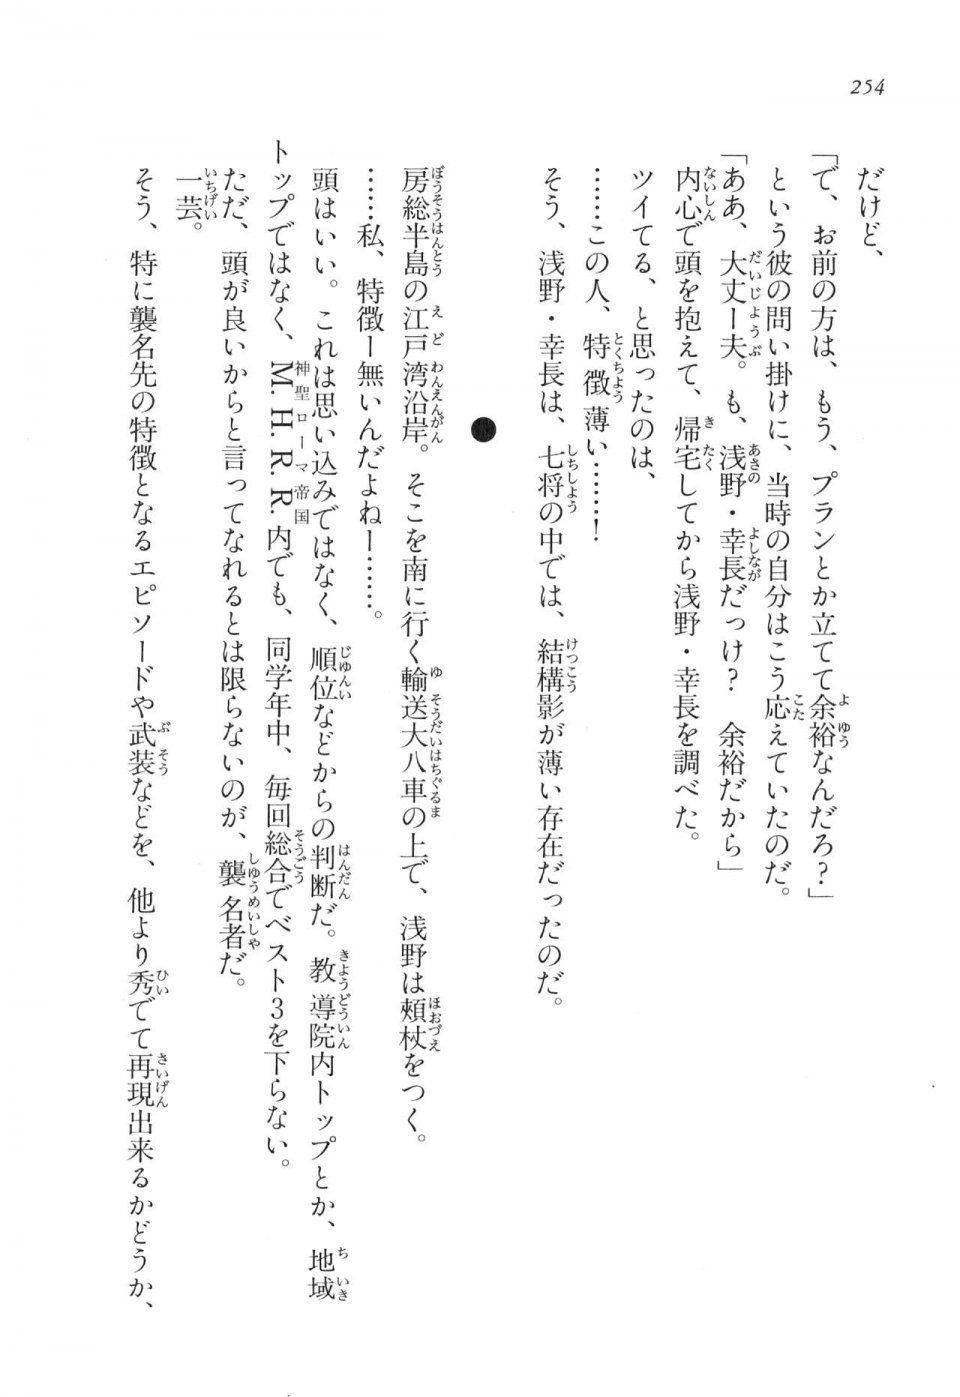 Kyoukai Senjou no Horizon LN Vol 17(7B) - Photo #254